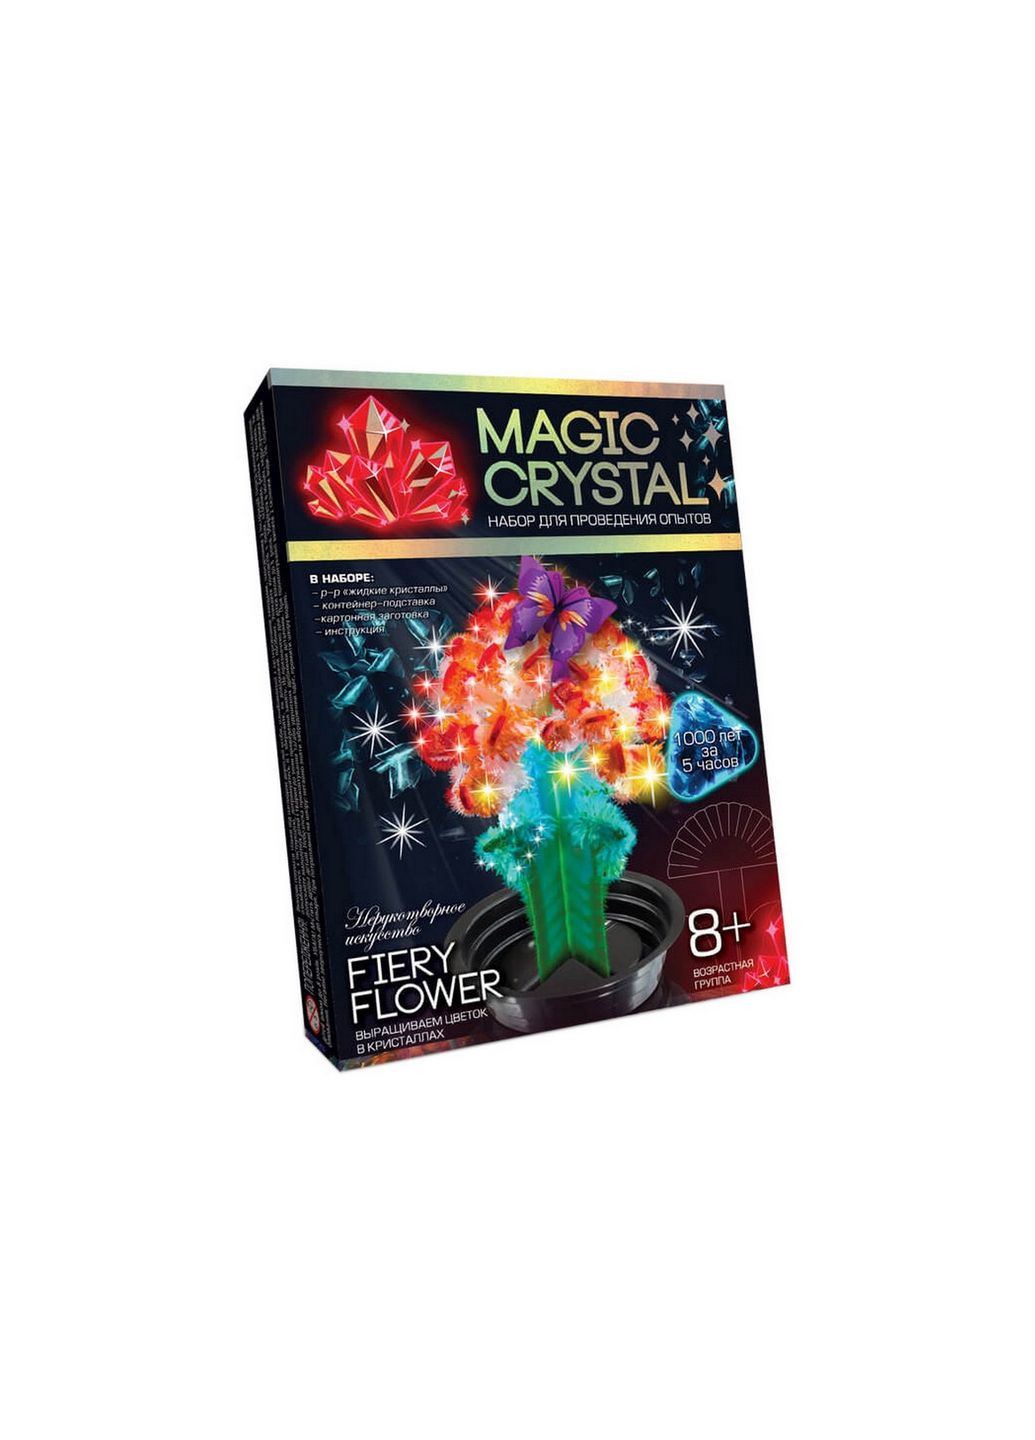 Детский набор для проведения опытов "MAGIC CRYSTAL" ОМС-01 Fiery Flower Danko Toys (280802484)